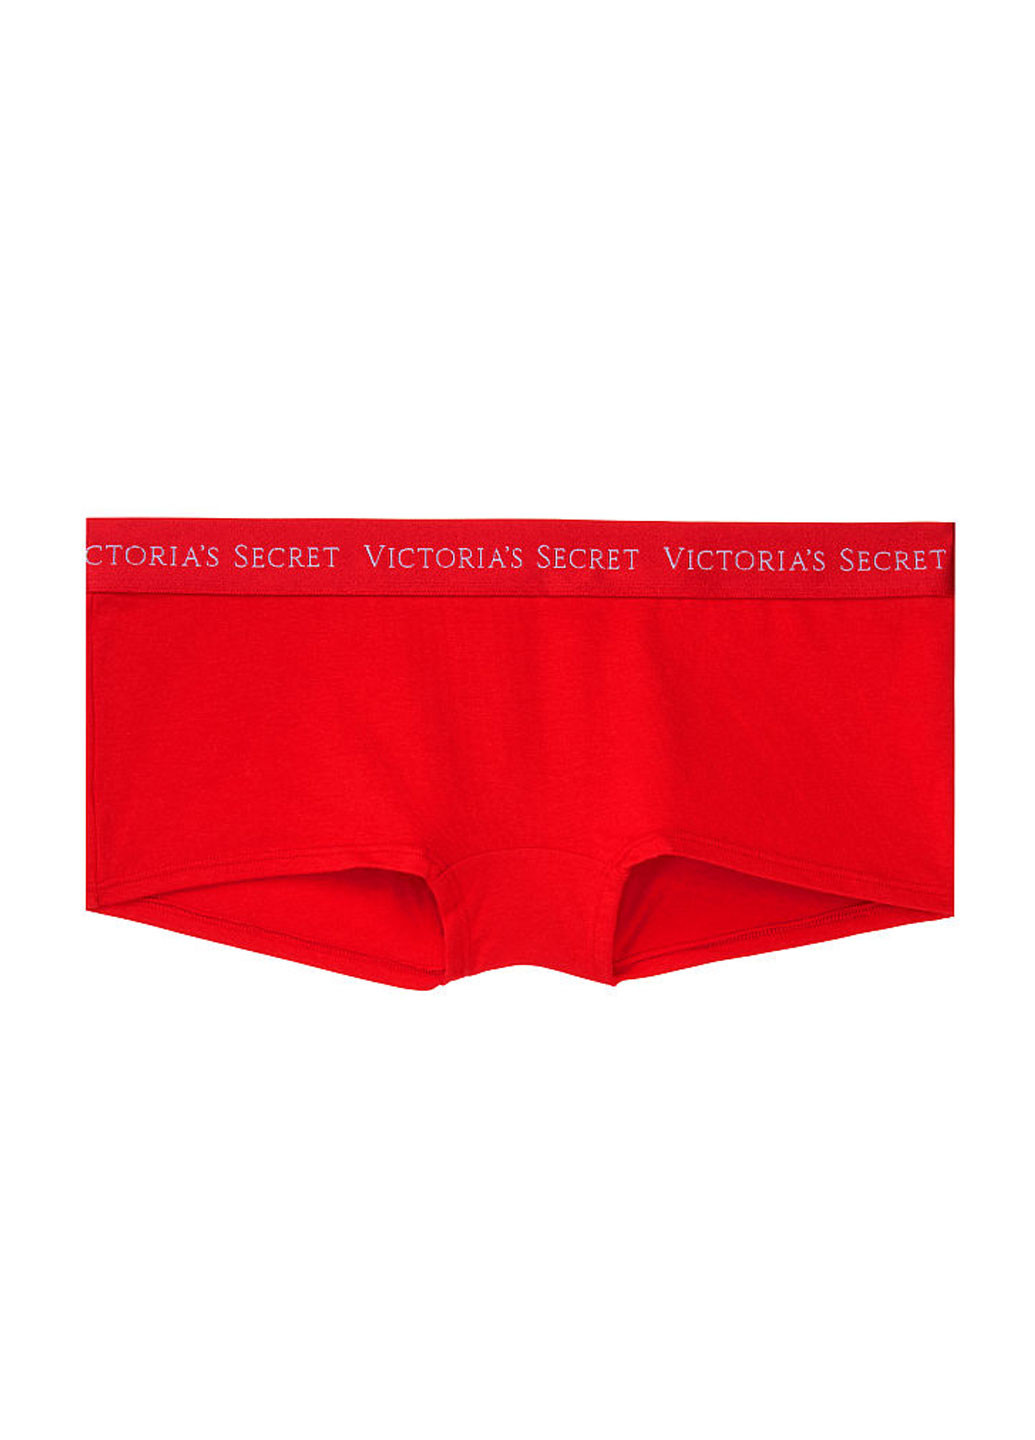 Трусики Victoria's Secret трусики-шорты надписи красные повседневные трикотаж, хлопок